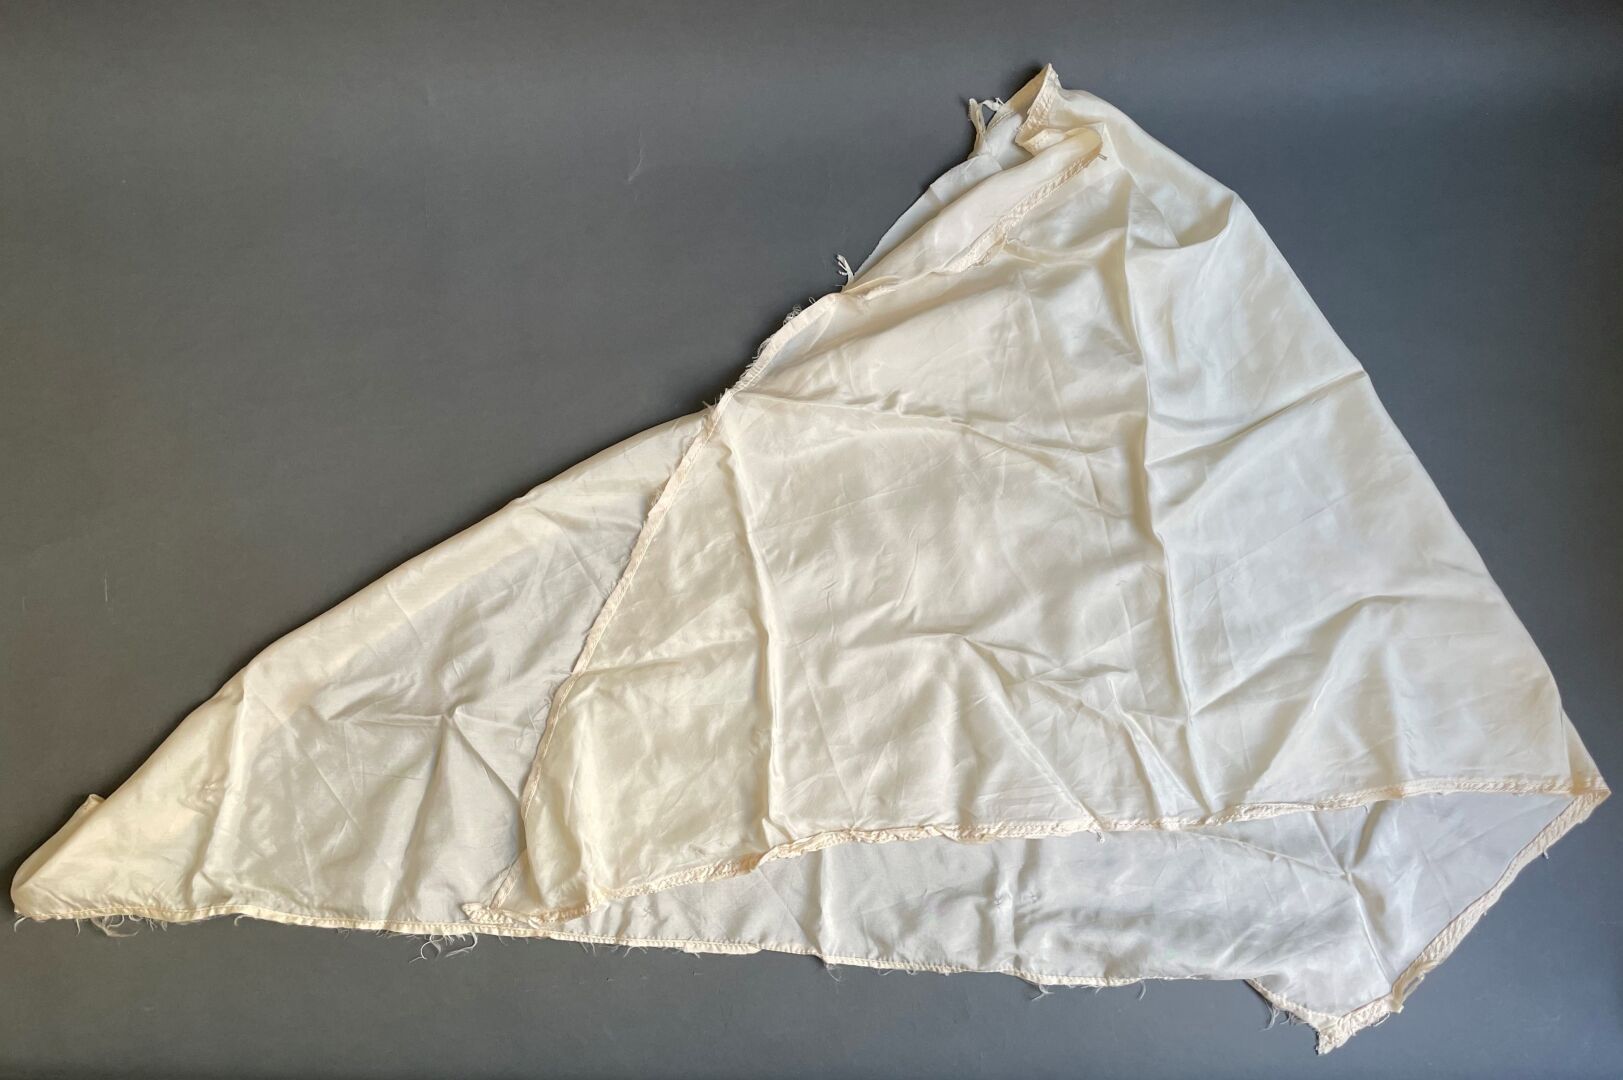 Null Fragmento de tela de paracaídas de 1943